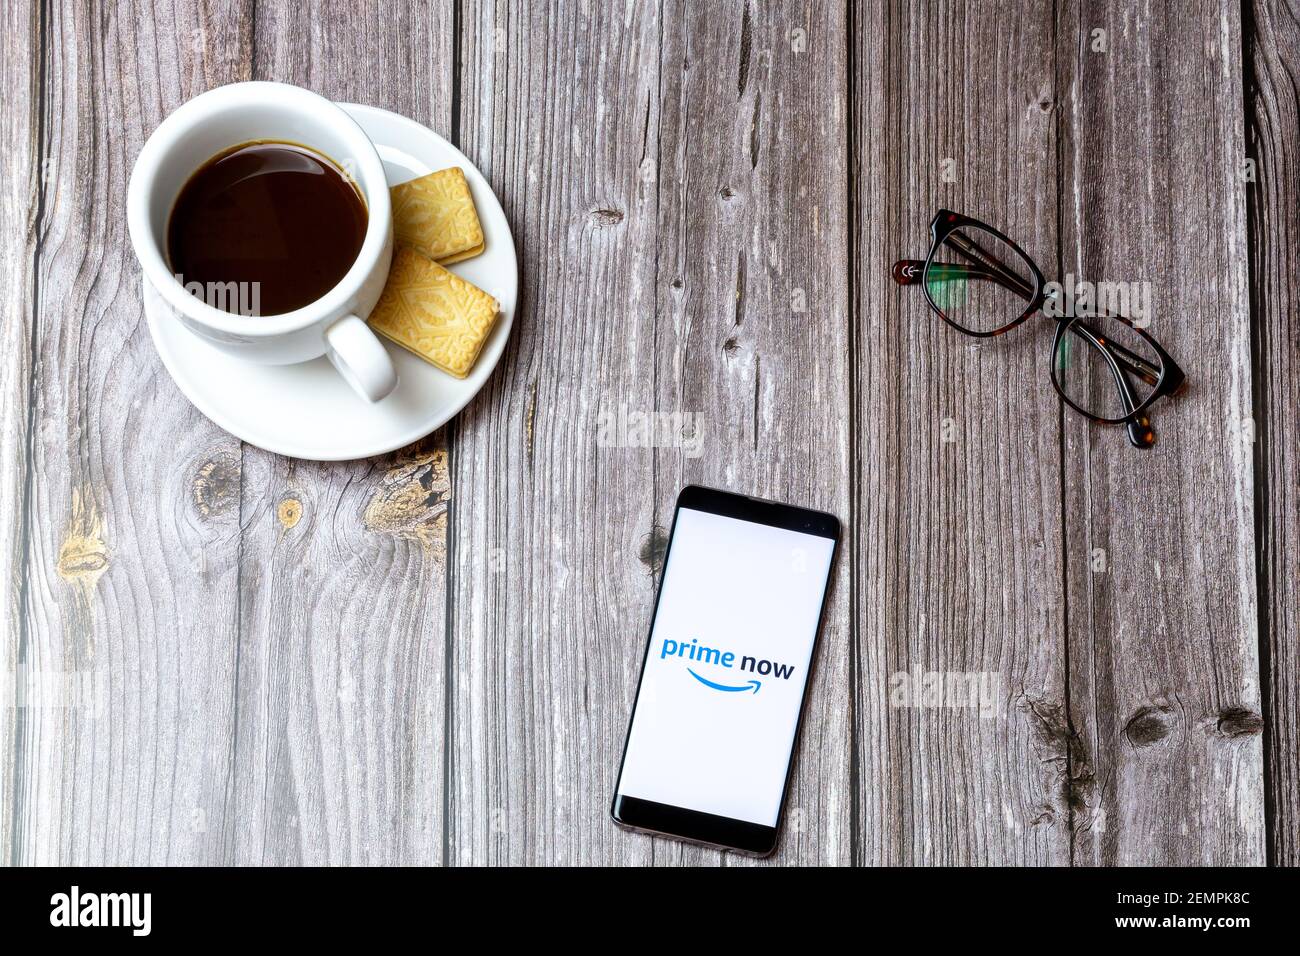 Un telefono cellulare o cellulare su un tavolo di legno Con l'app Amazon prime Now aperta accanto a caffè e bicchieri Foto Stock